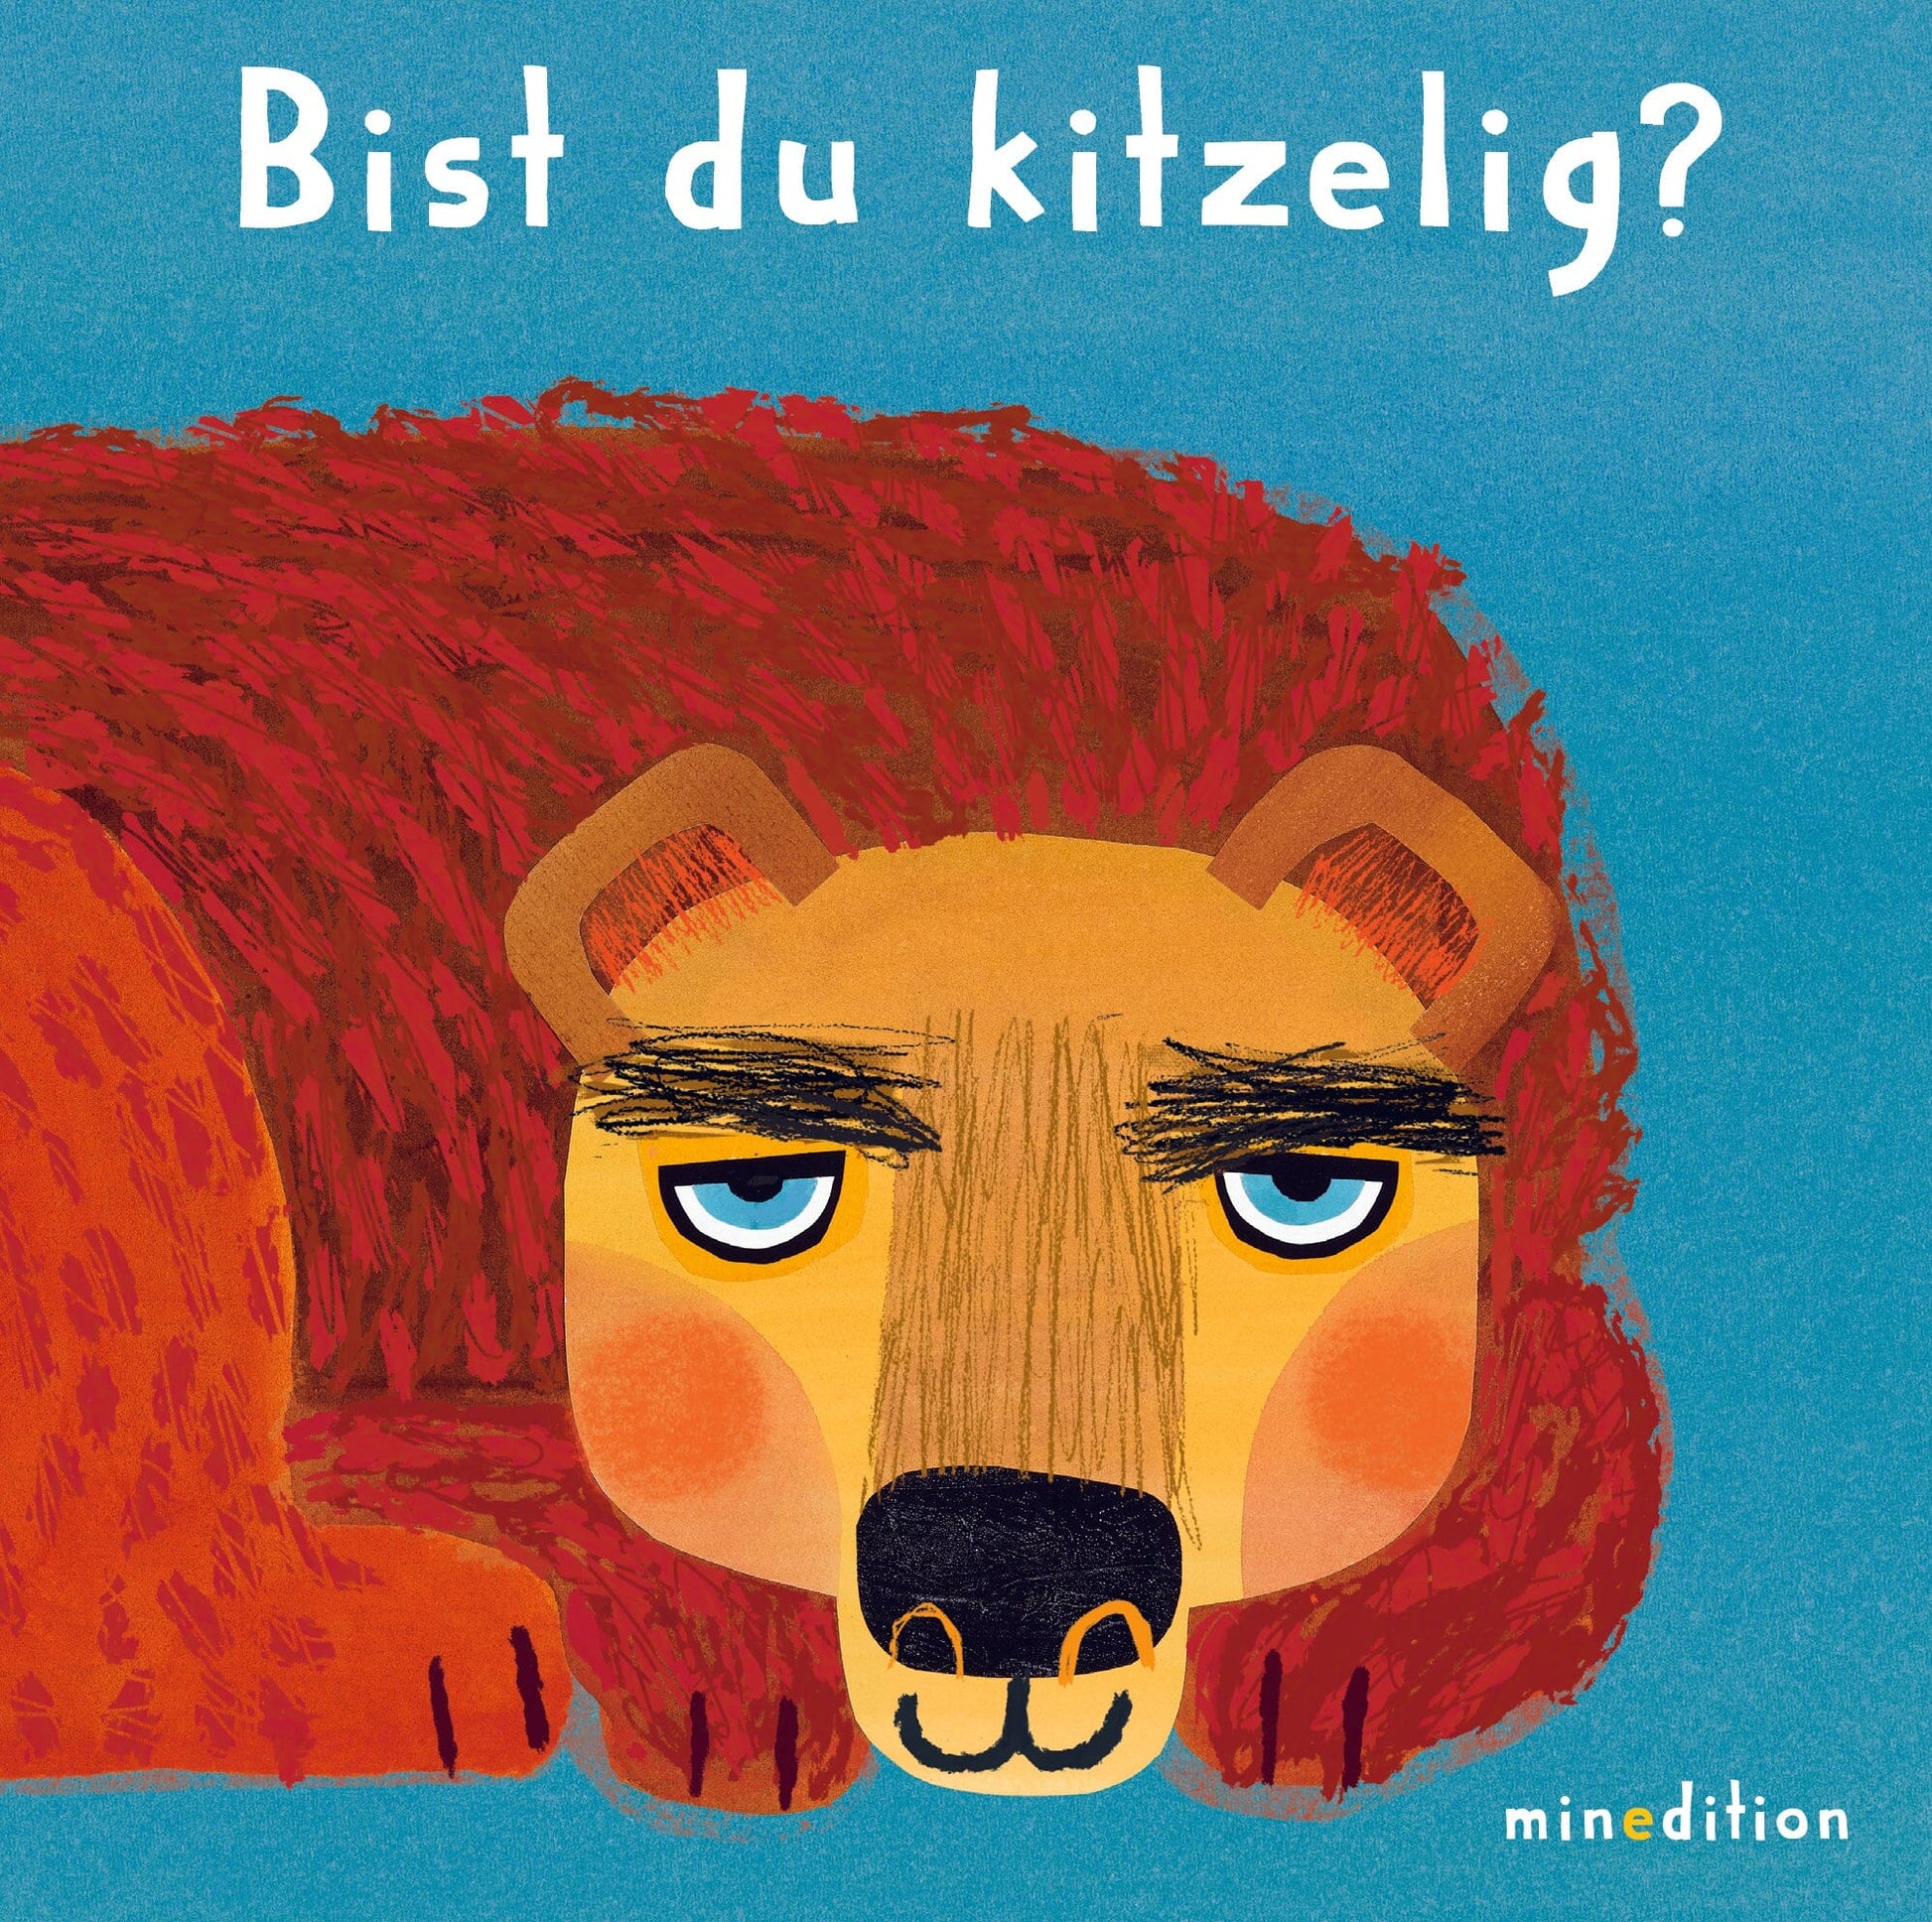 Buch: Bist du kitzelig? Kinderbuch minedition Verlag